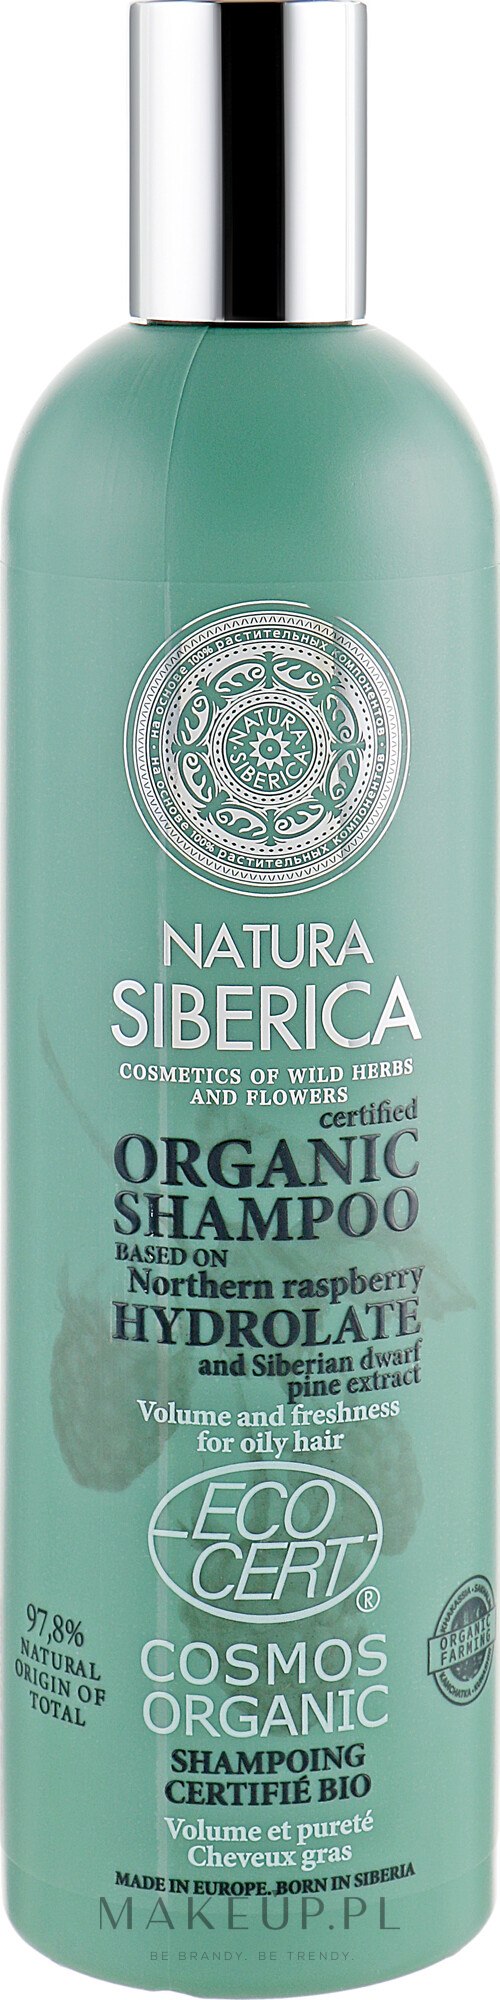 szampon organiczny opinie